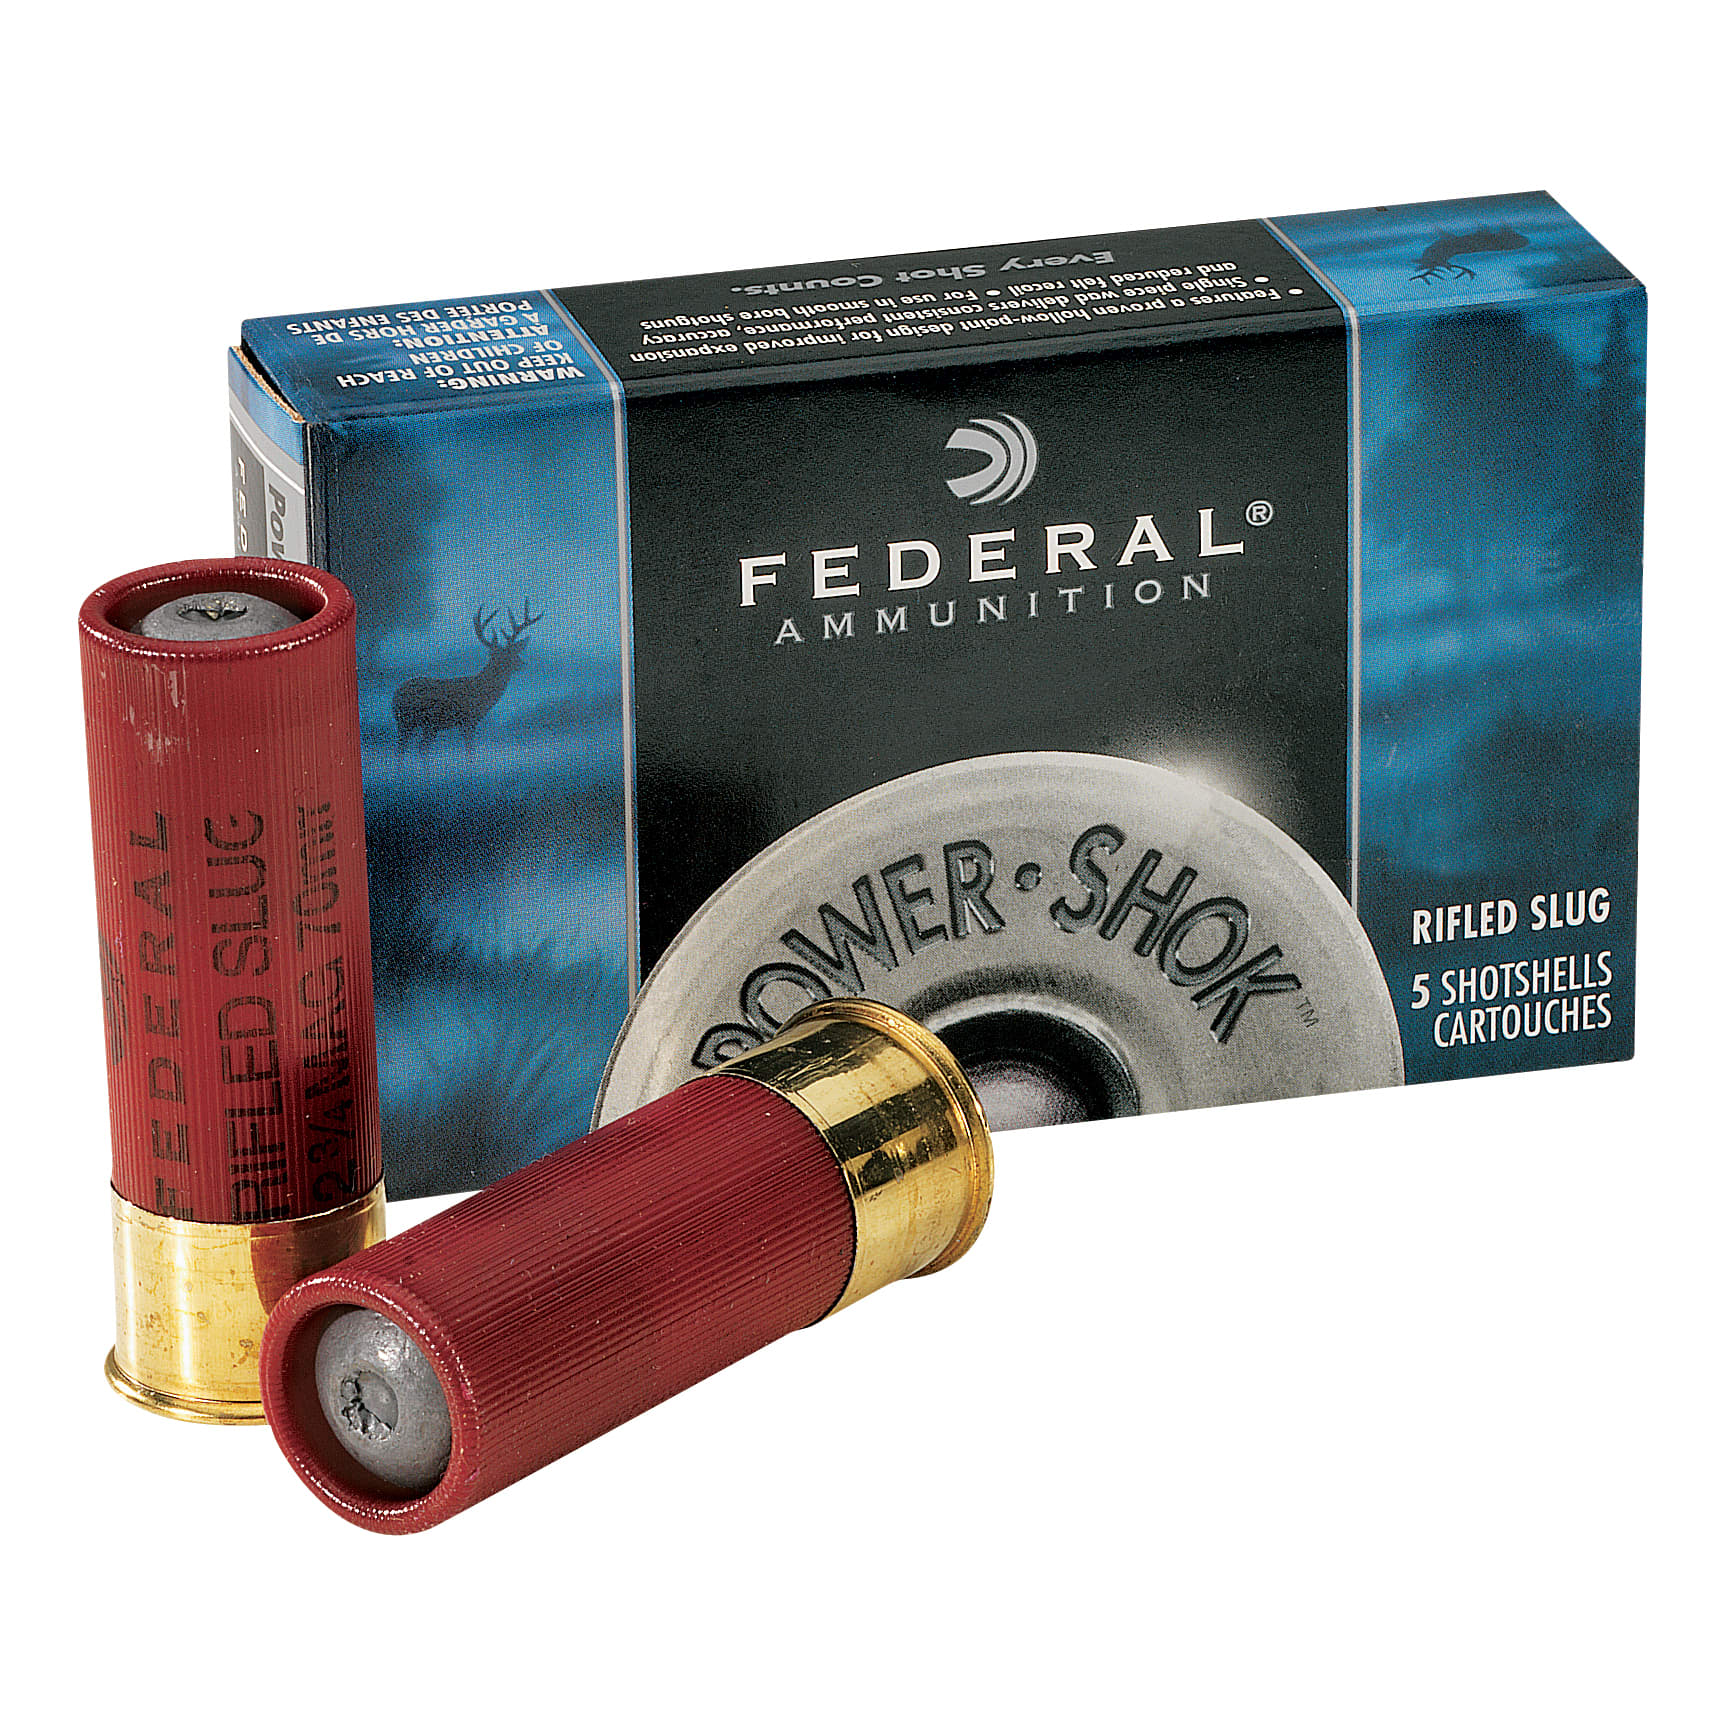 Federal Power-Shok Rifled Slug 12 Gauge, 3, 1-1/4 oz, Rifled Hollow Point Slug  Shotshell Ammunition